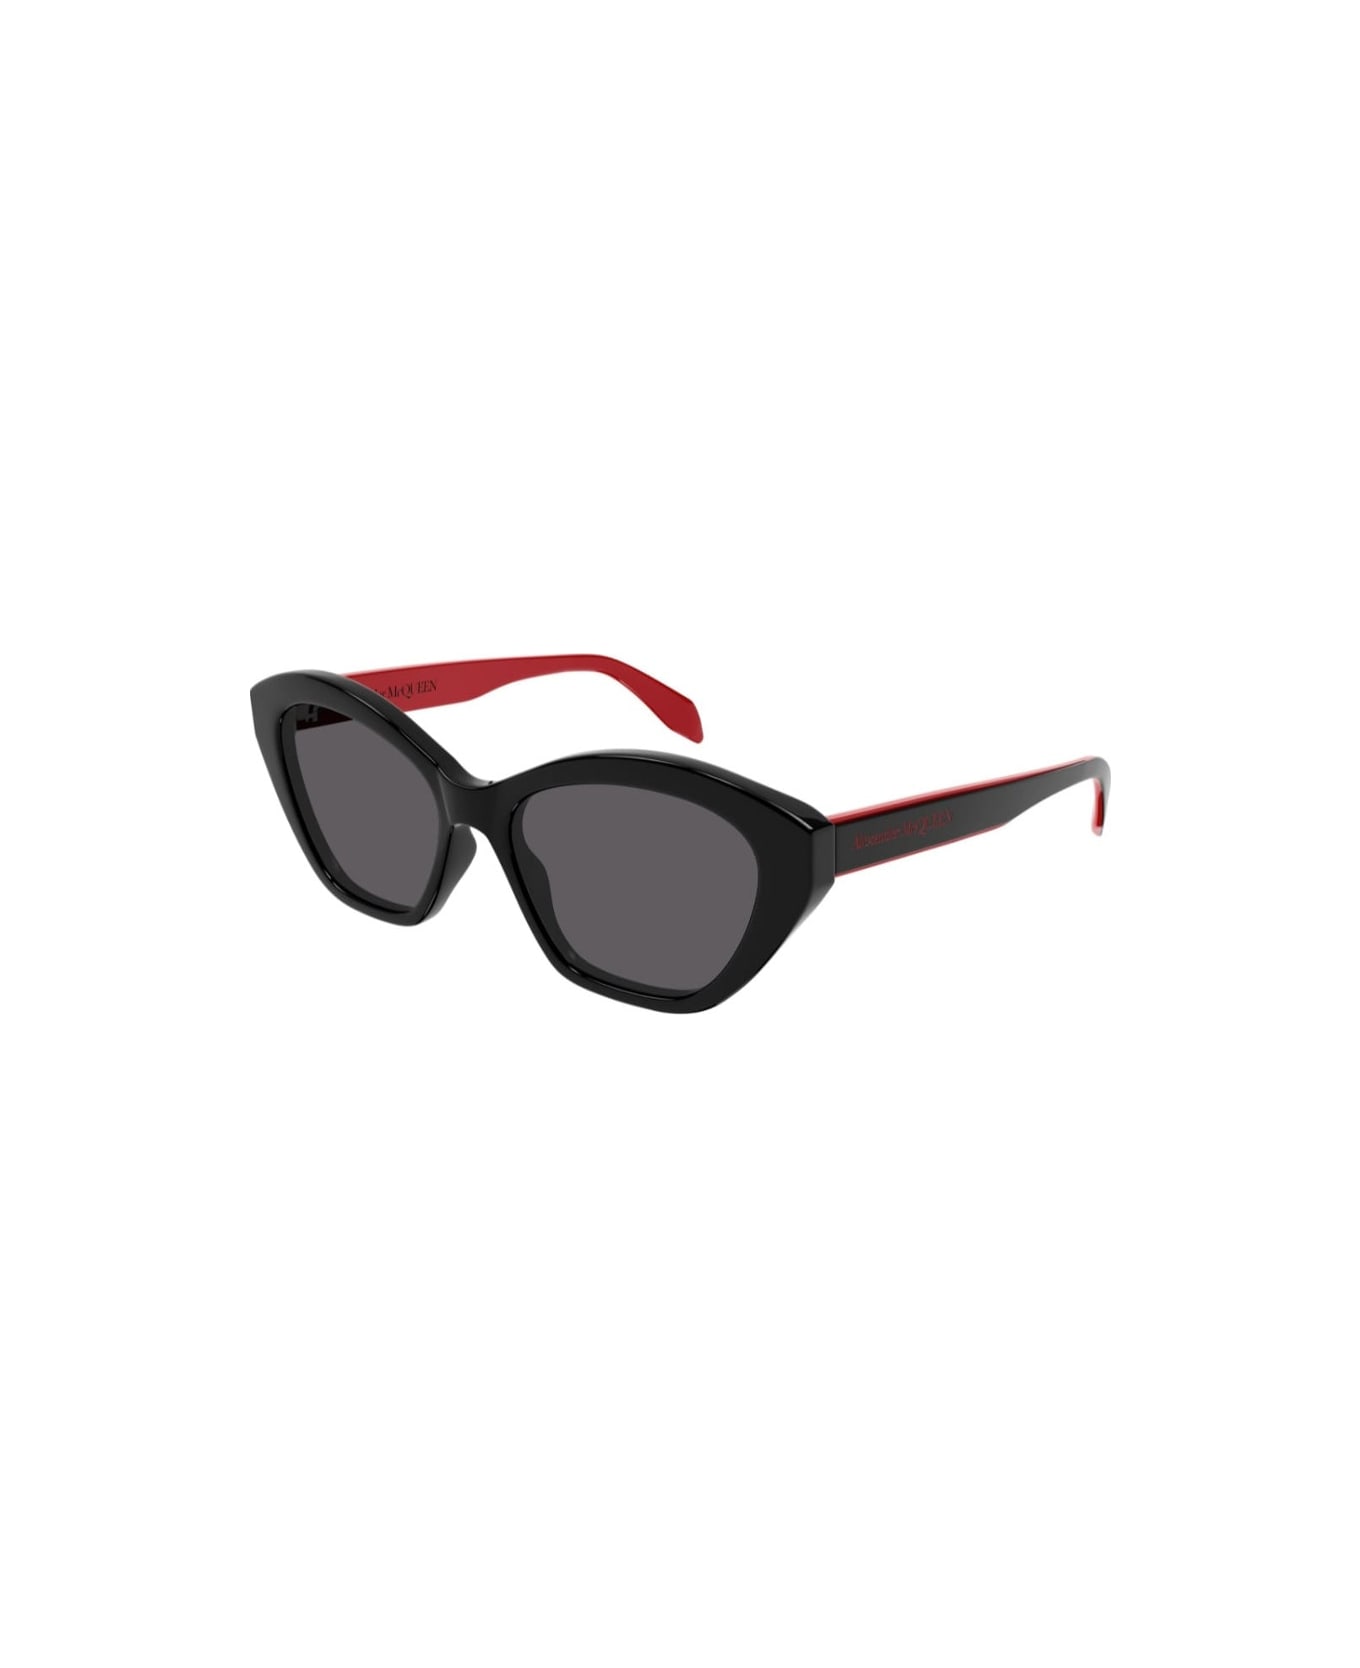 Alexander McQueen Eyewear AM0355S 003 Sunglasses